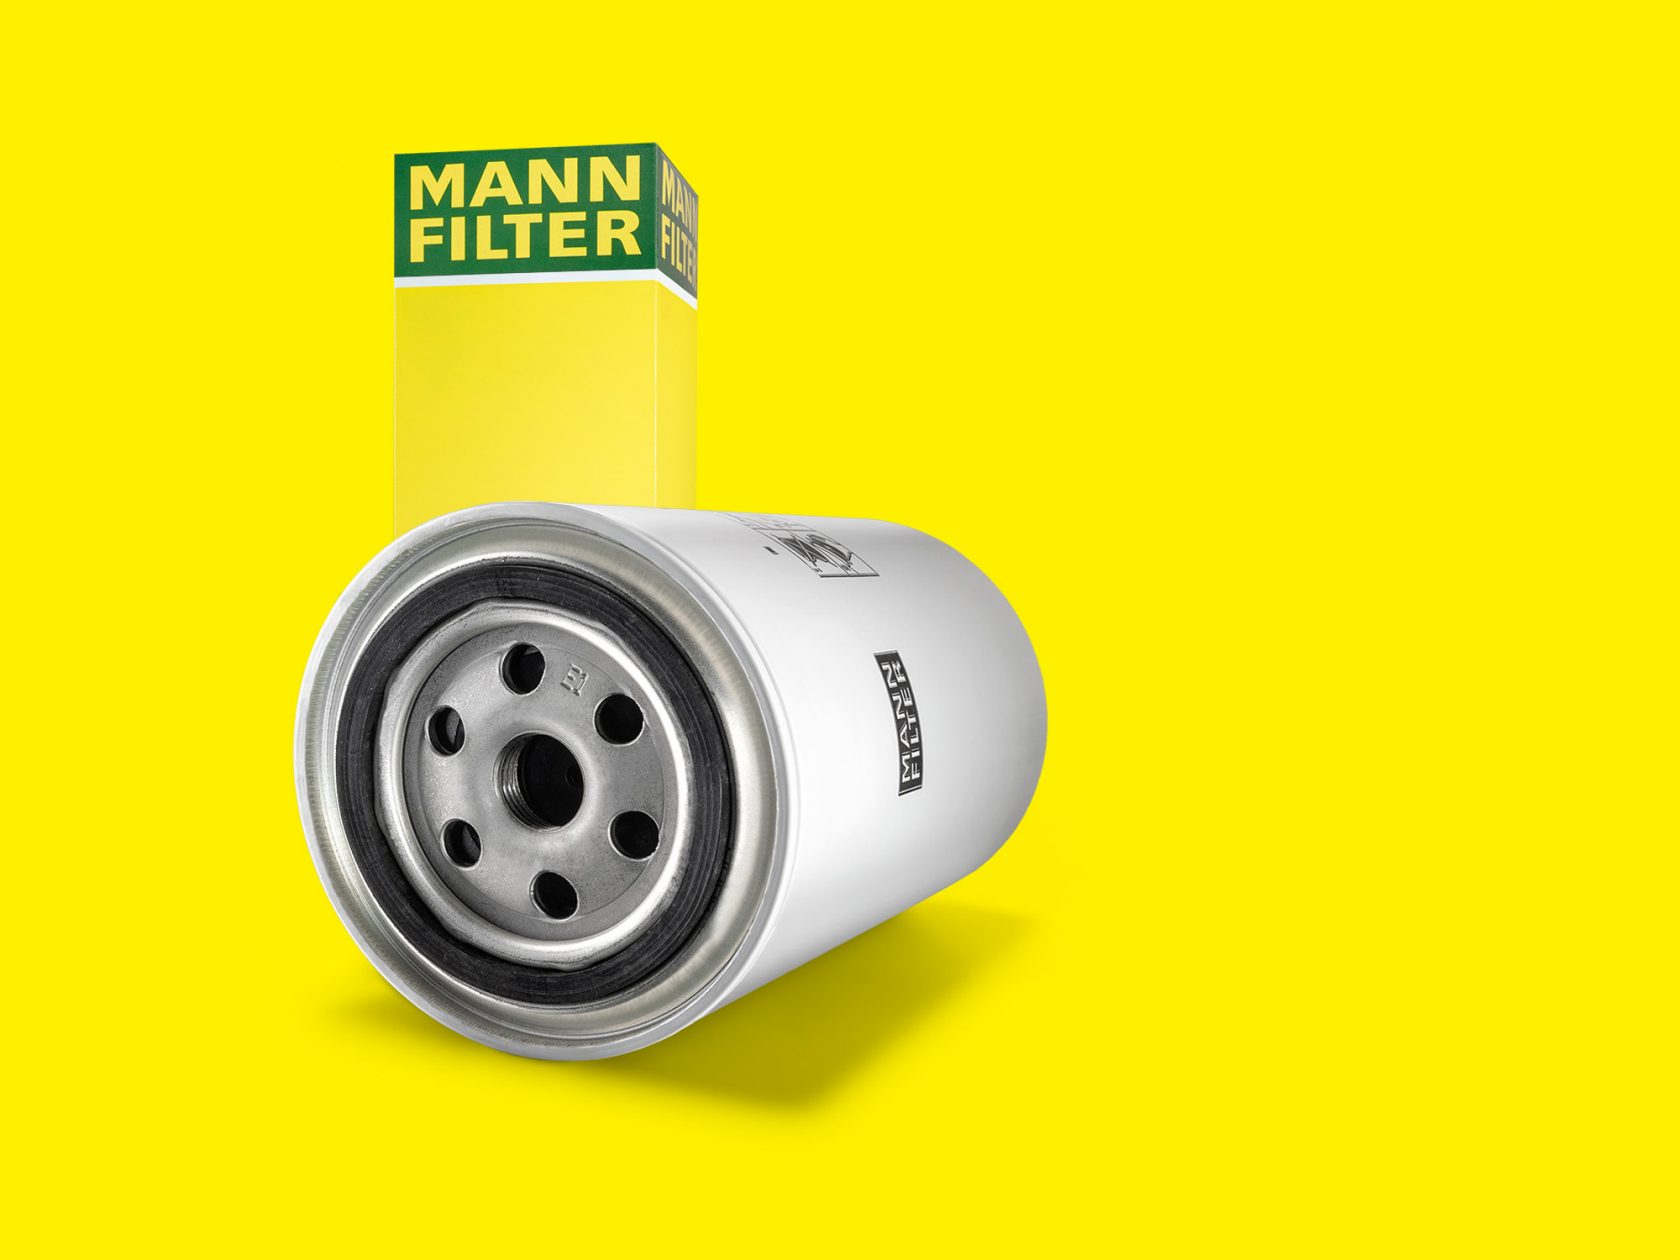 Kühlwasserfilter von MANN-FILTER kühlen den Motor Ihres Fahrzeugs effizient